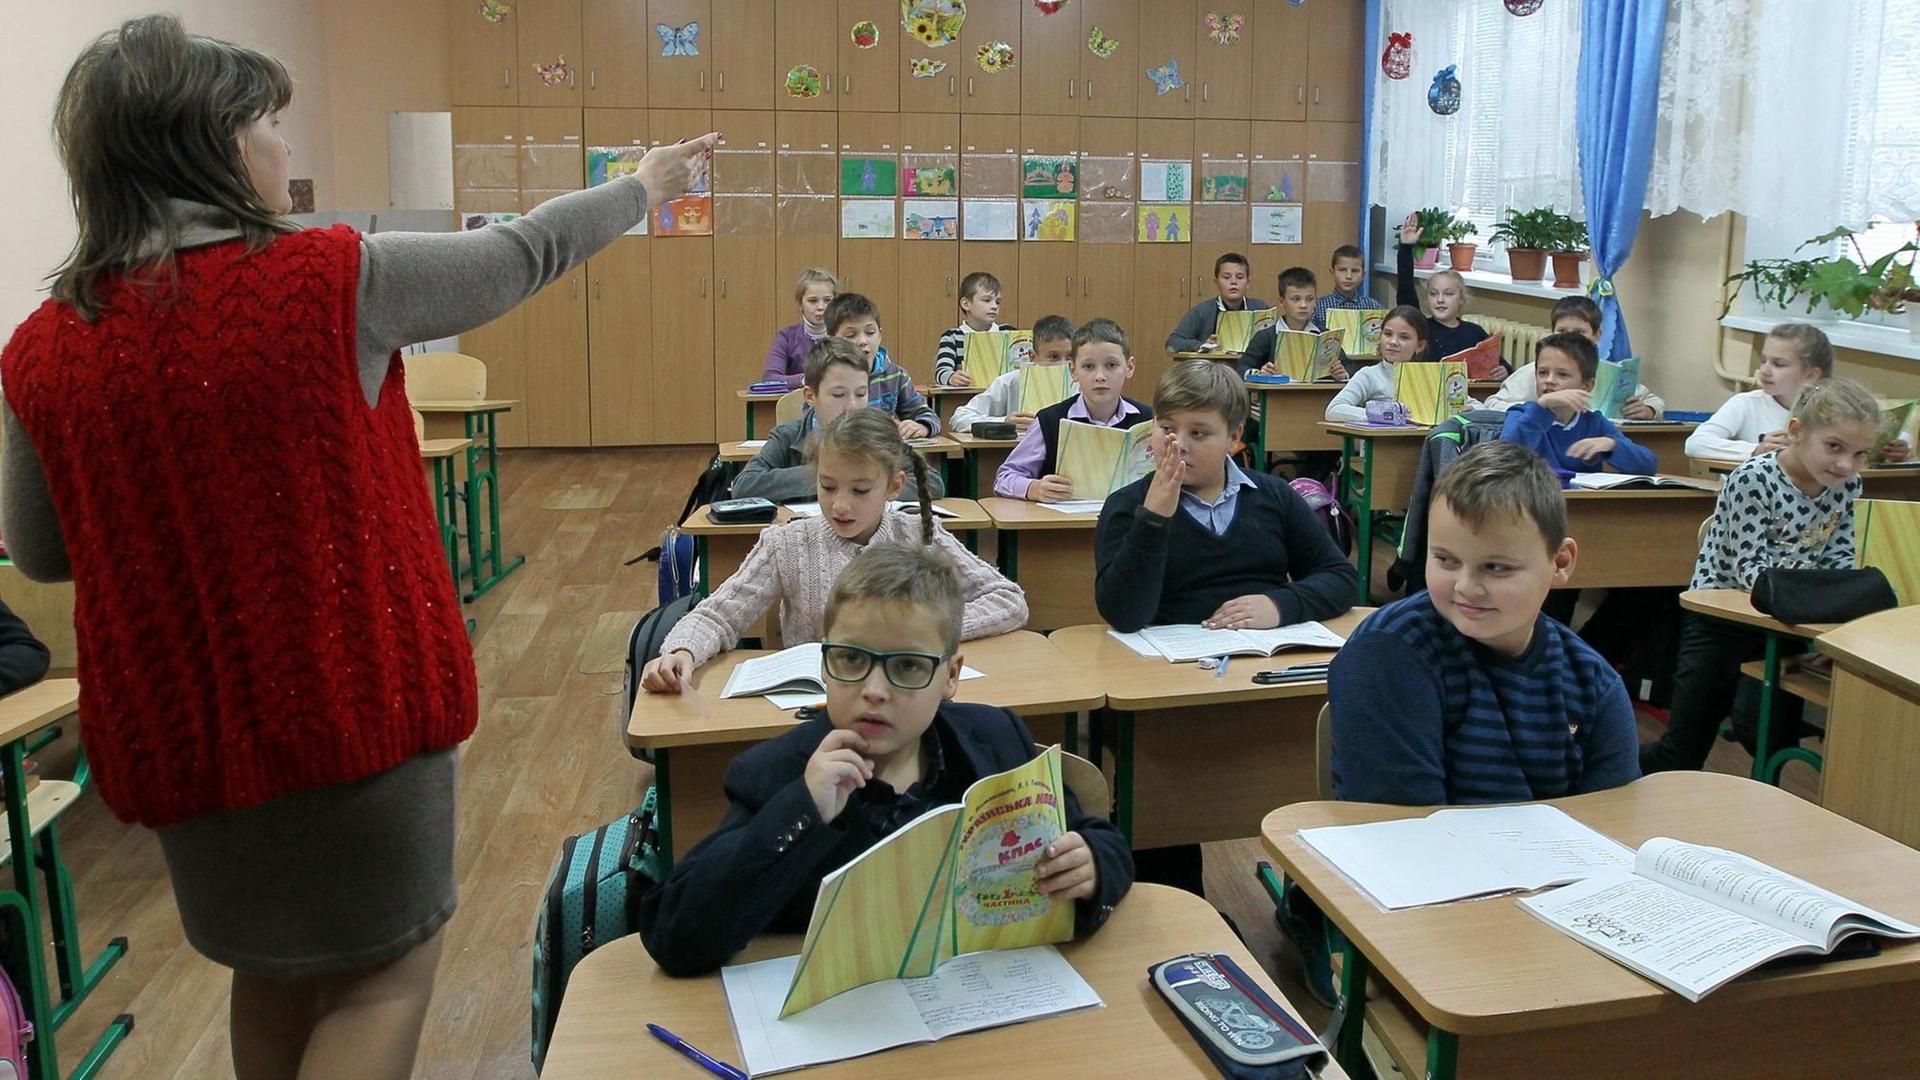 Eine Unterrichtsstunde in Ukrainisch an einer Grundschule in der Region Kiew, im Oktober 2017. Links im Bild die Lehrerin weist auf die Schüler.